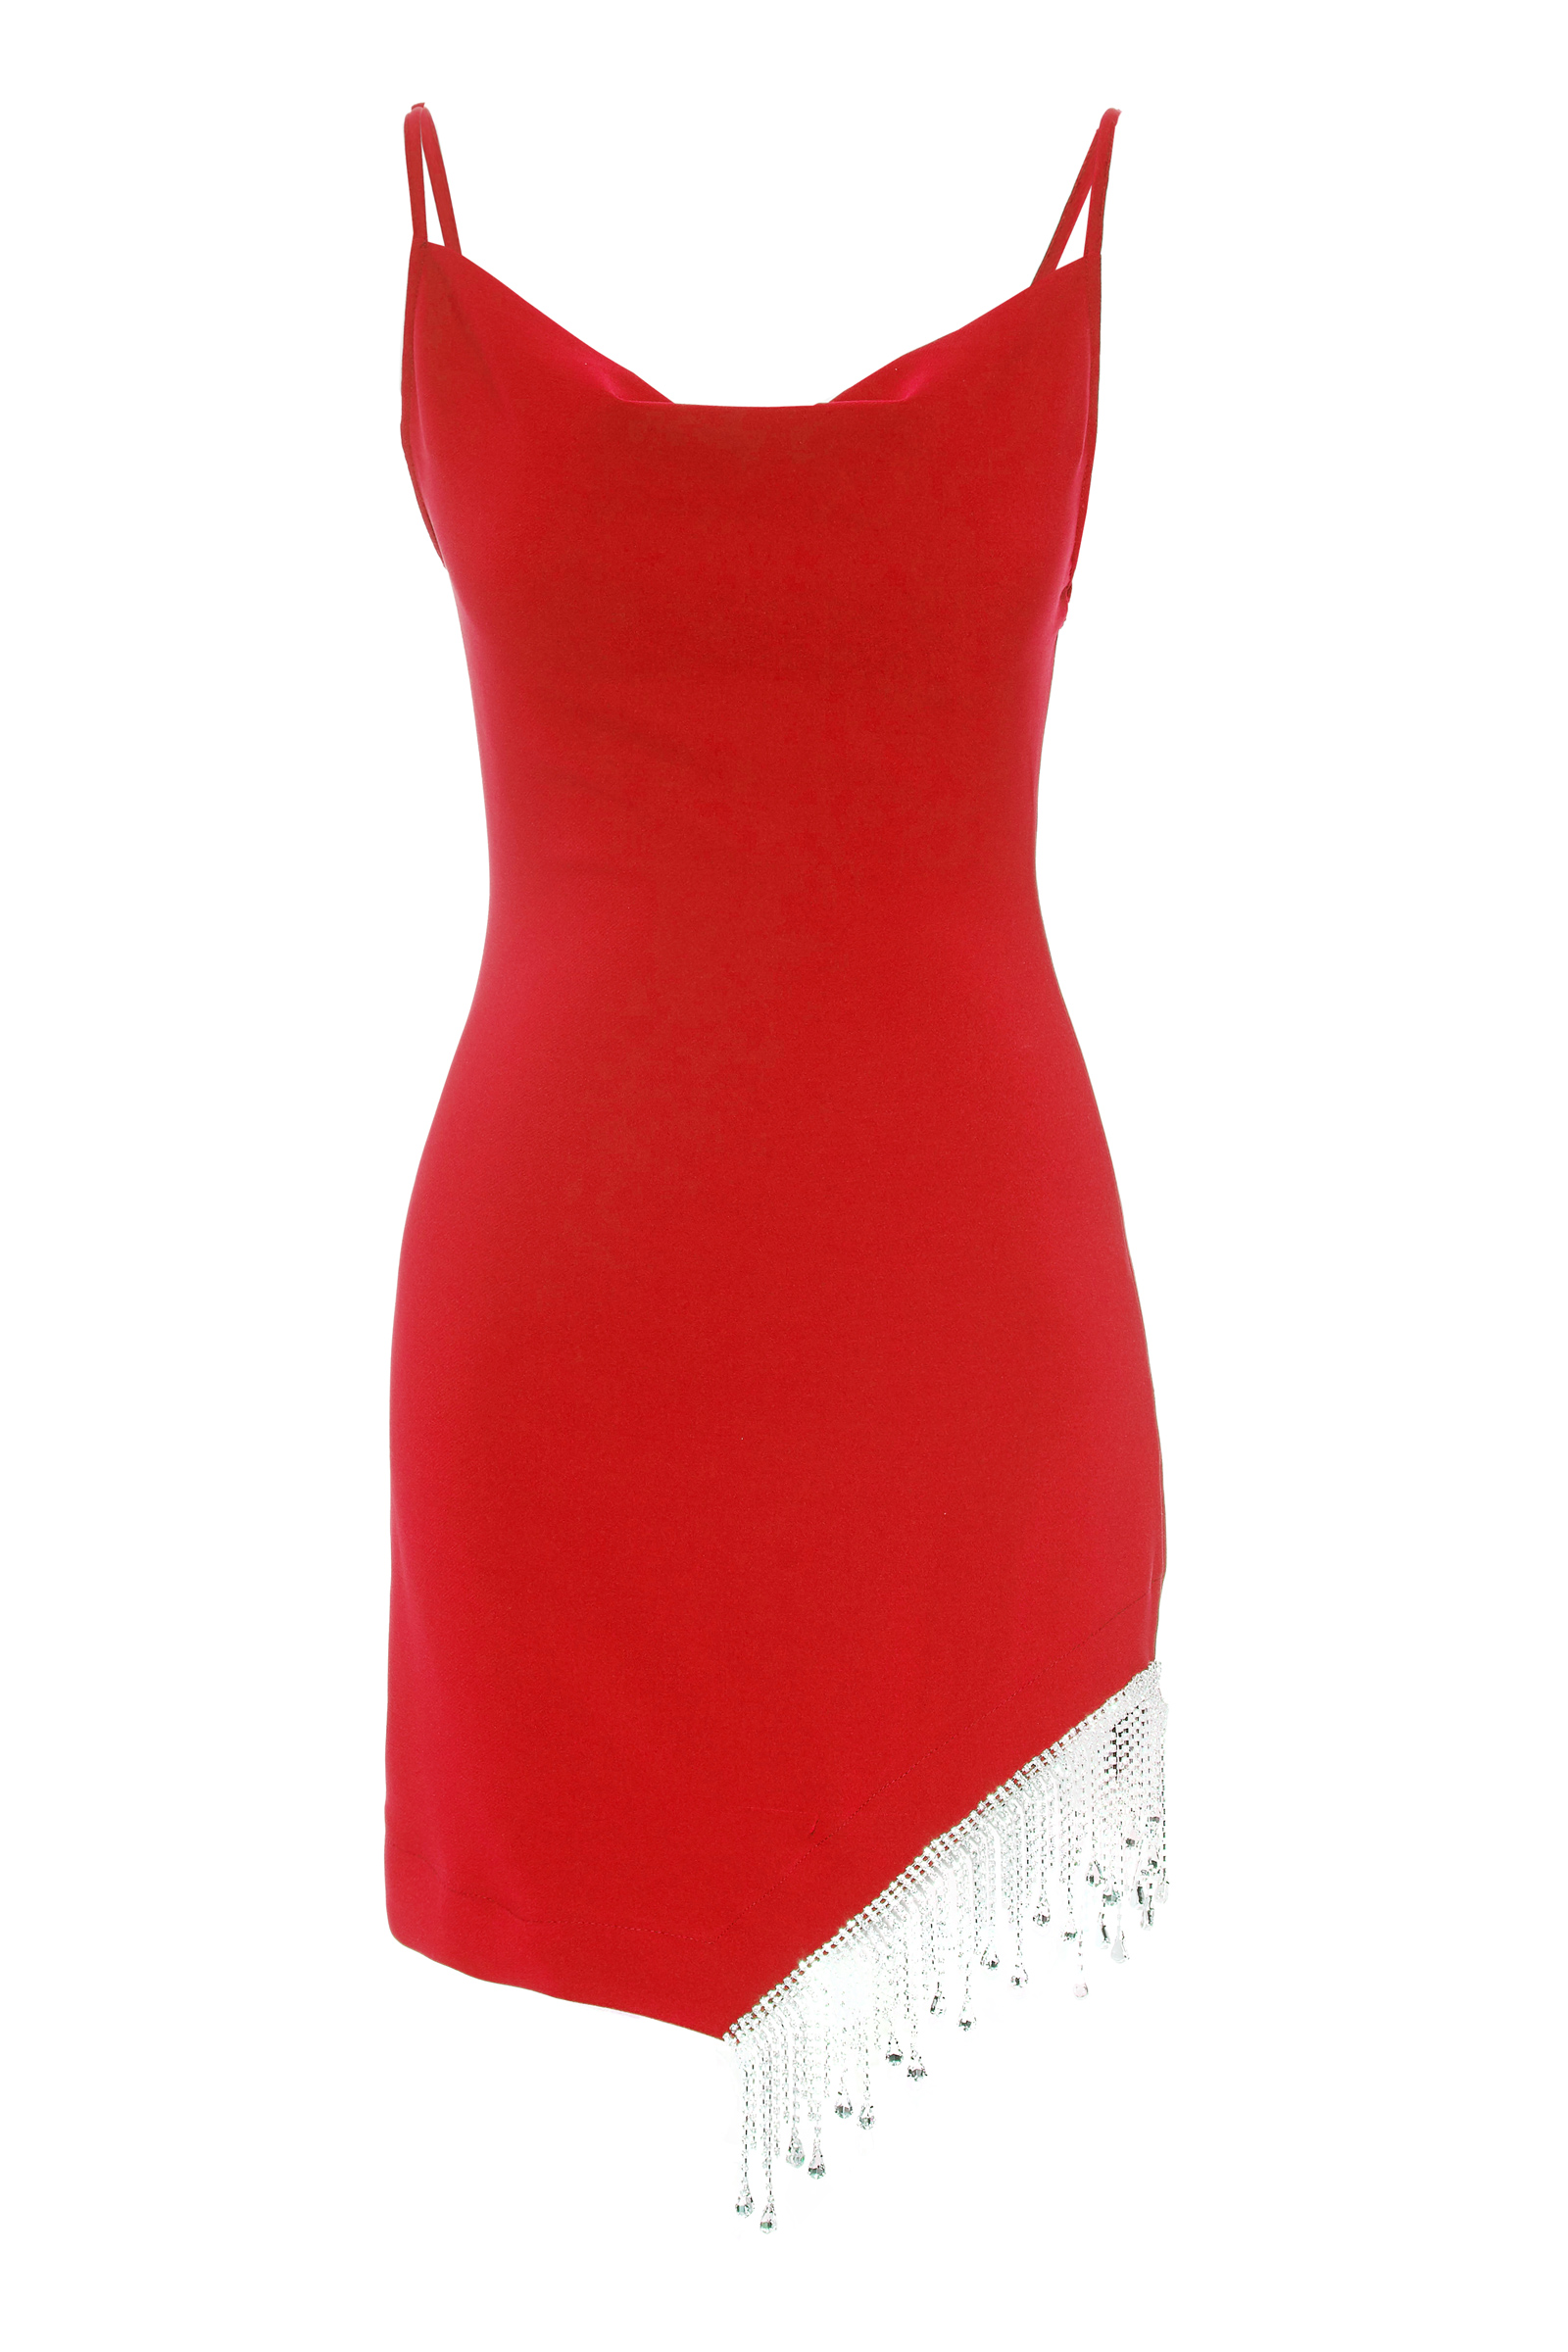 Kırmızı krep kolsuz kısa elbise